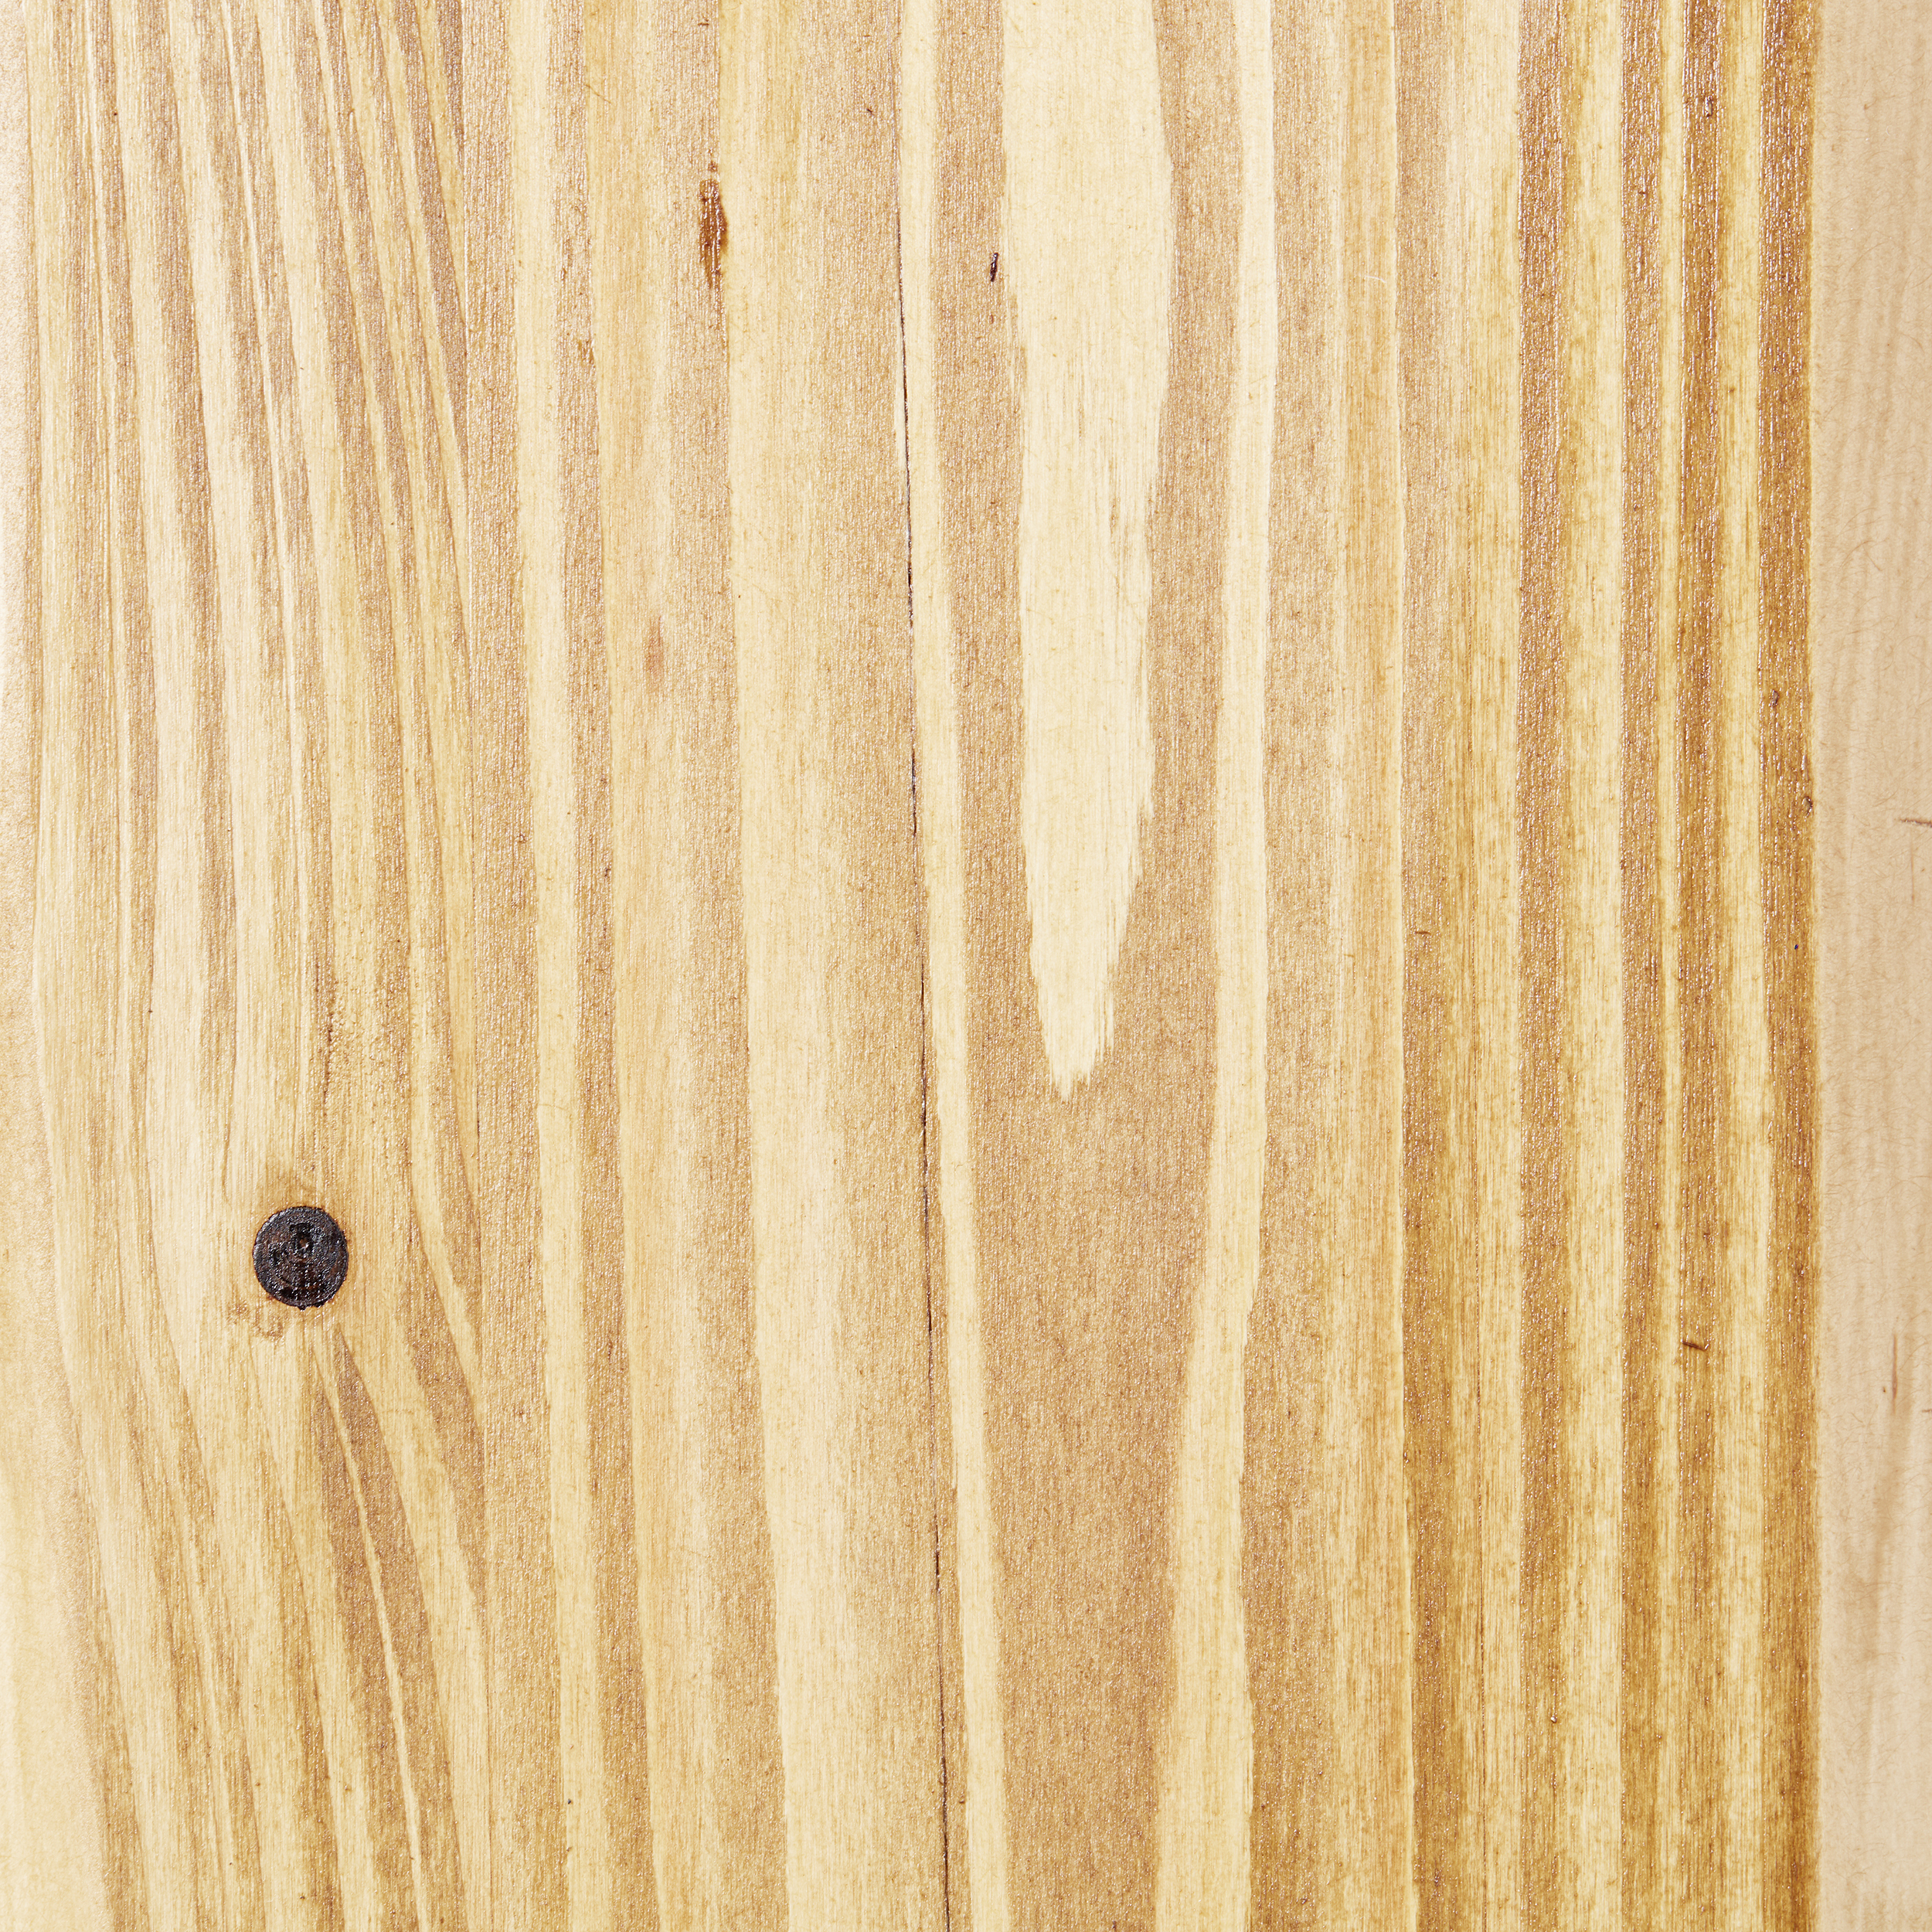 Wandleuchten Feingold kiefer gebeizt Holz/Metall